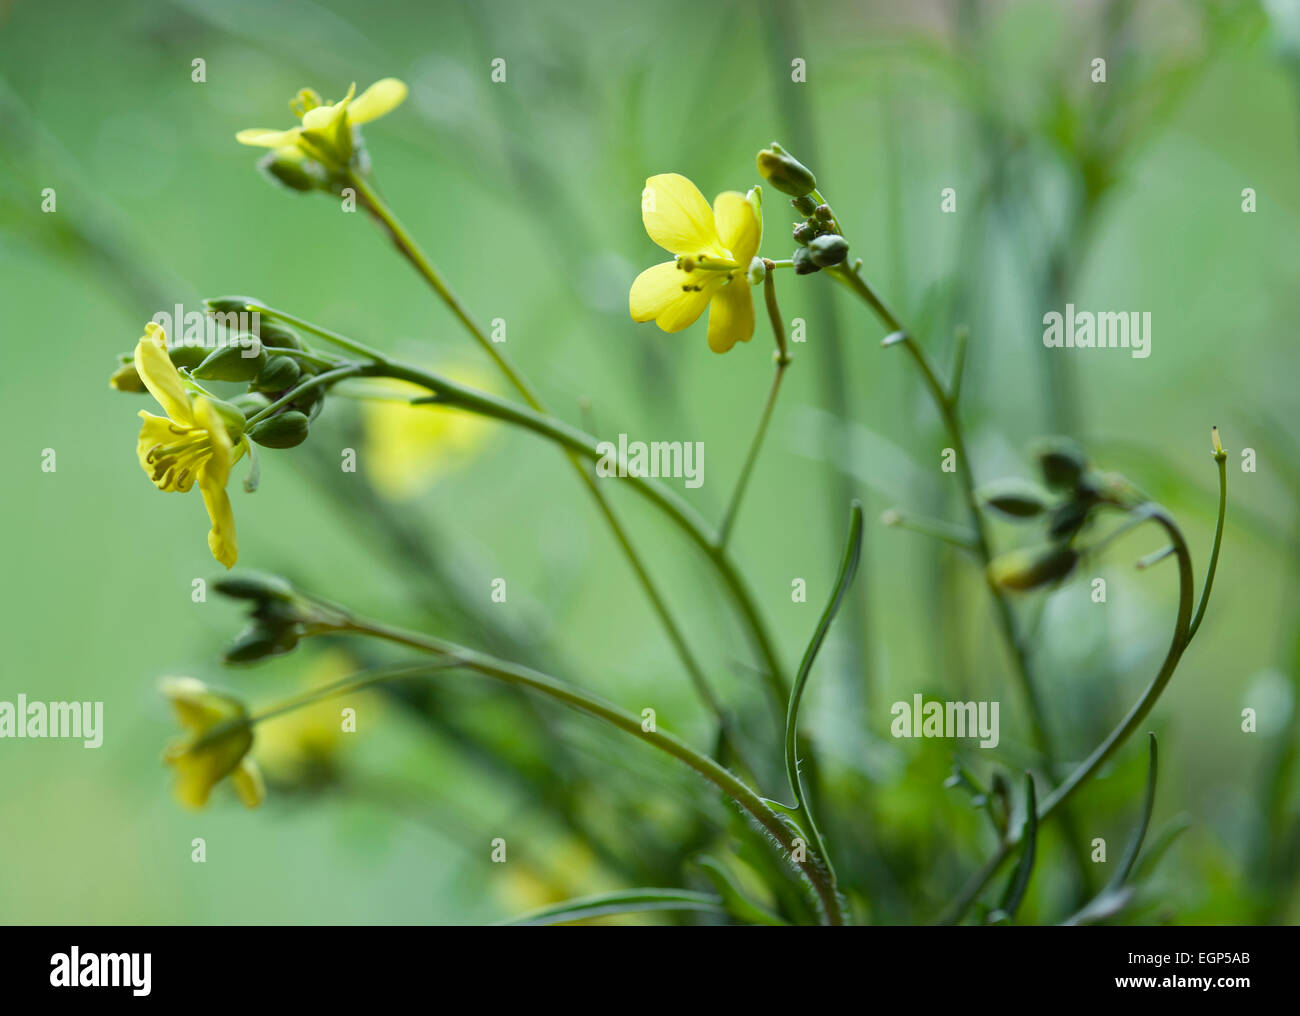 Fusée, Eruca vesicaria sativa. Fermer vue latérale des feuilles et fleurs jaunes. Banque D'Images